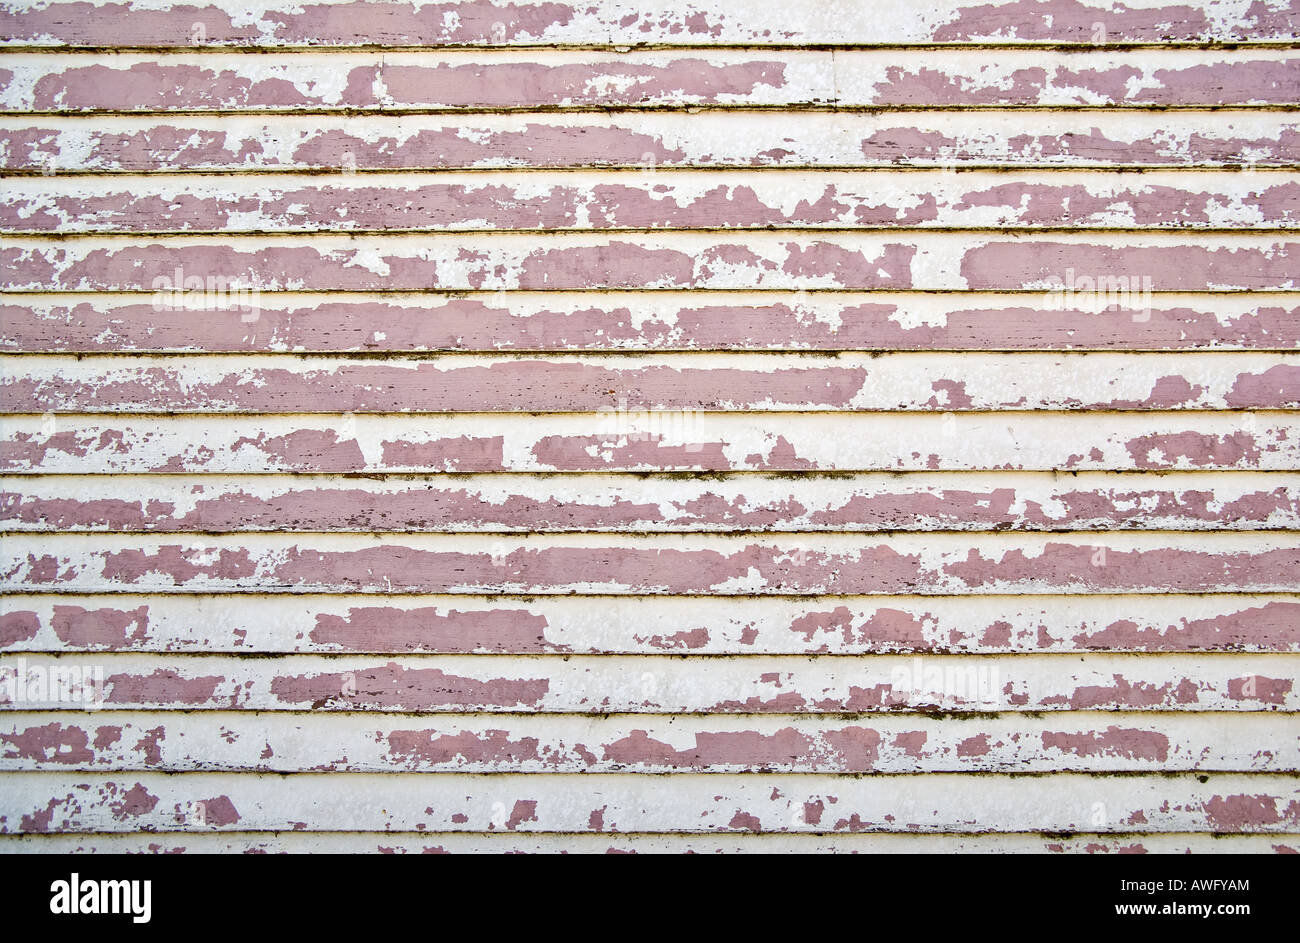 Vieux mur en bois weatherboard toute l'écaillage de la peinture Banque D'Images